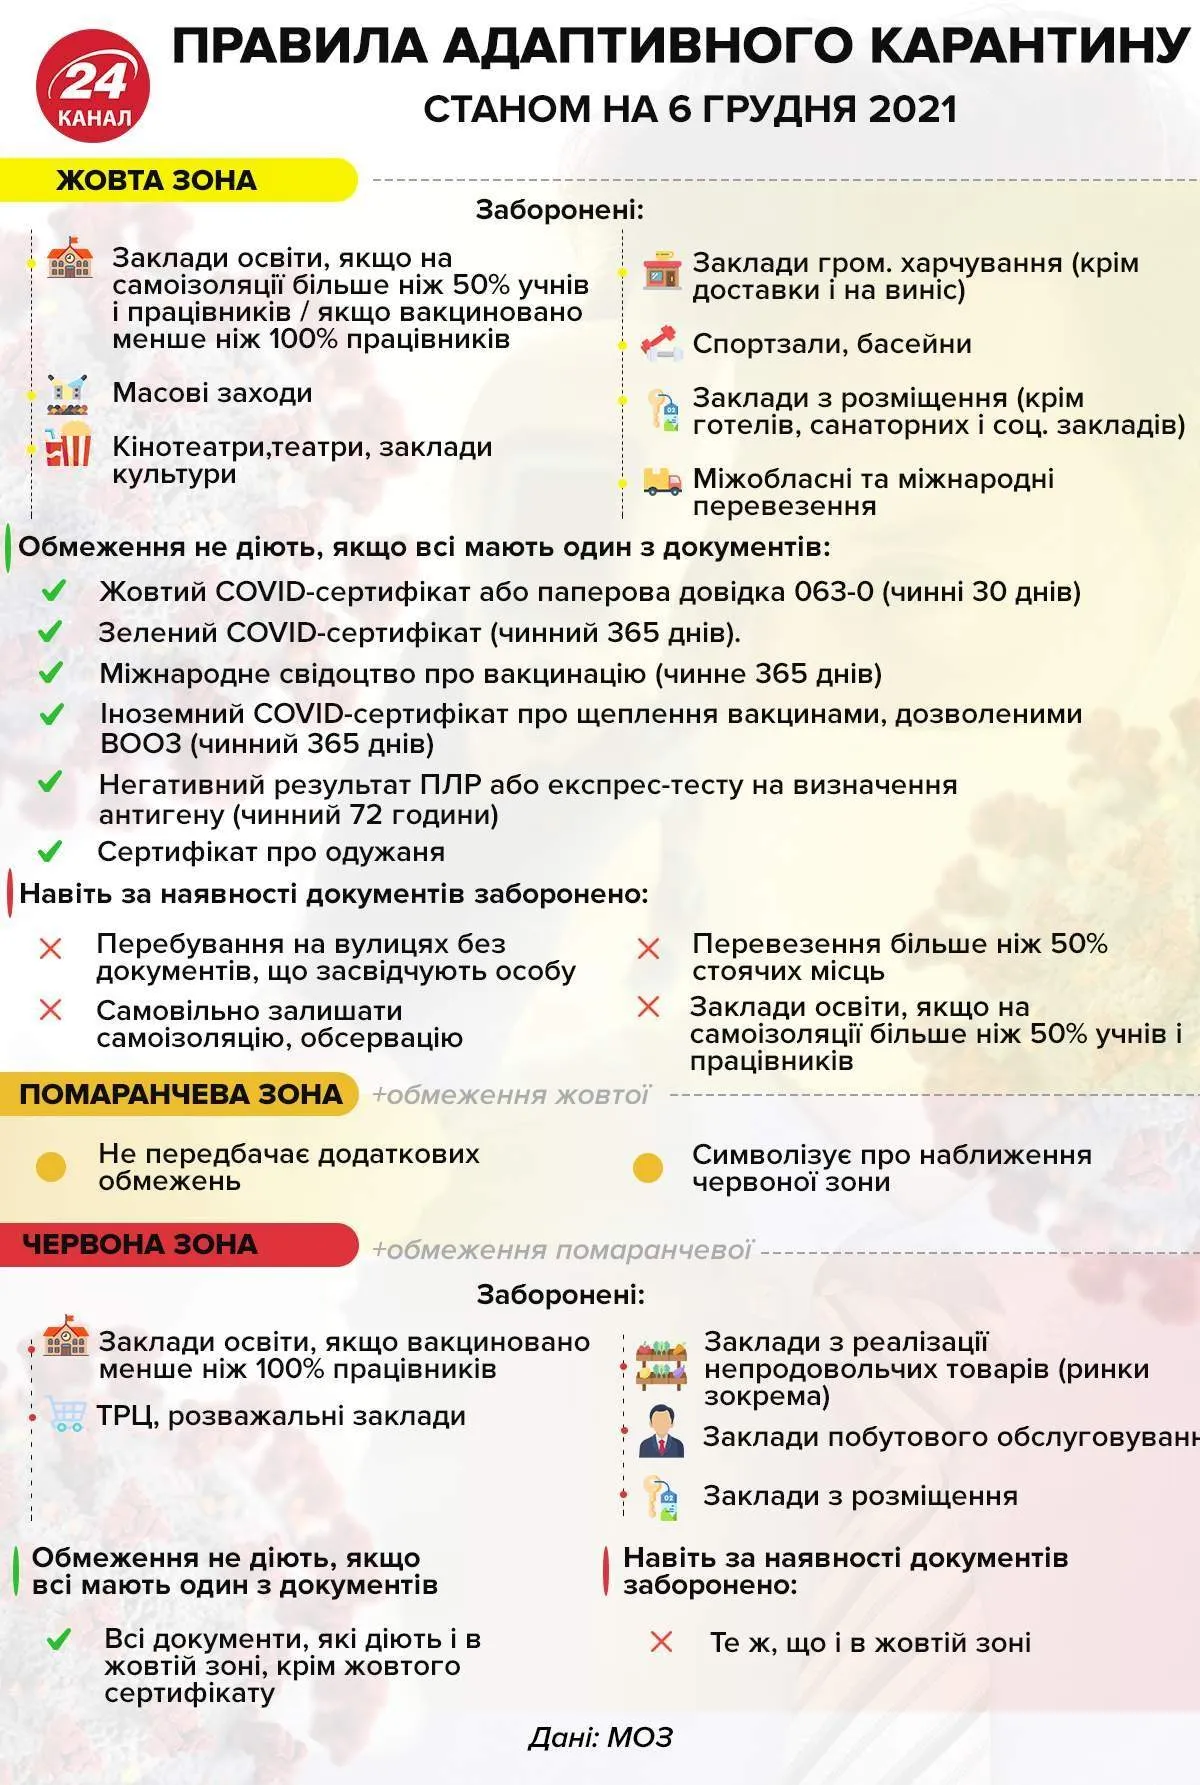 Правила адаптивного карантину в Україні інфографіка за даними МОЗ